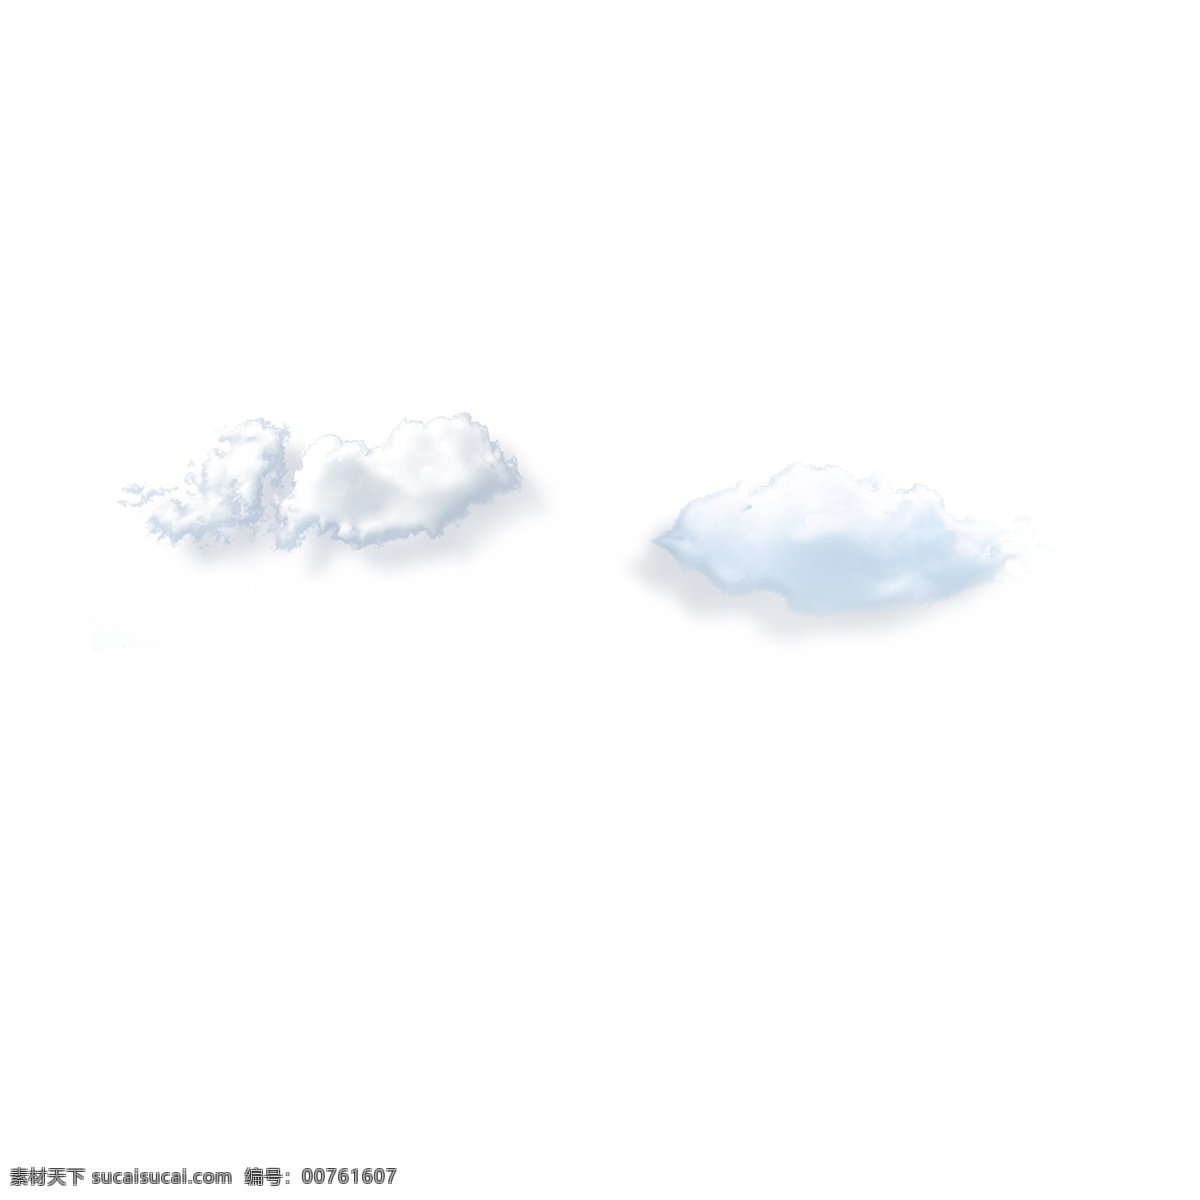 卡通 天空 白色 云朵 卡通白云 白色云朵 天空白云 卡通插图 创意卡通下载 插图 png图下载